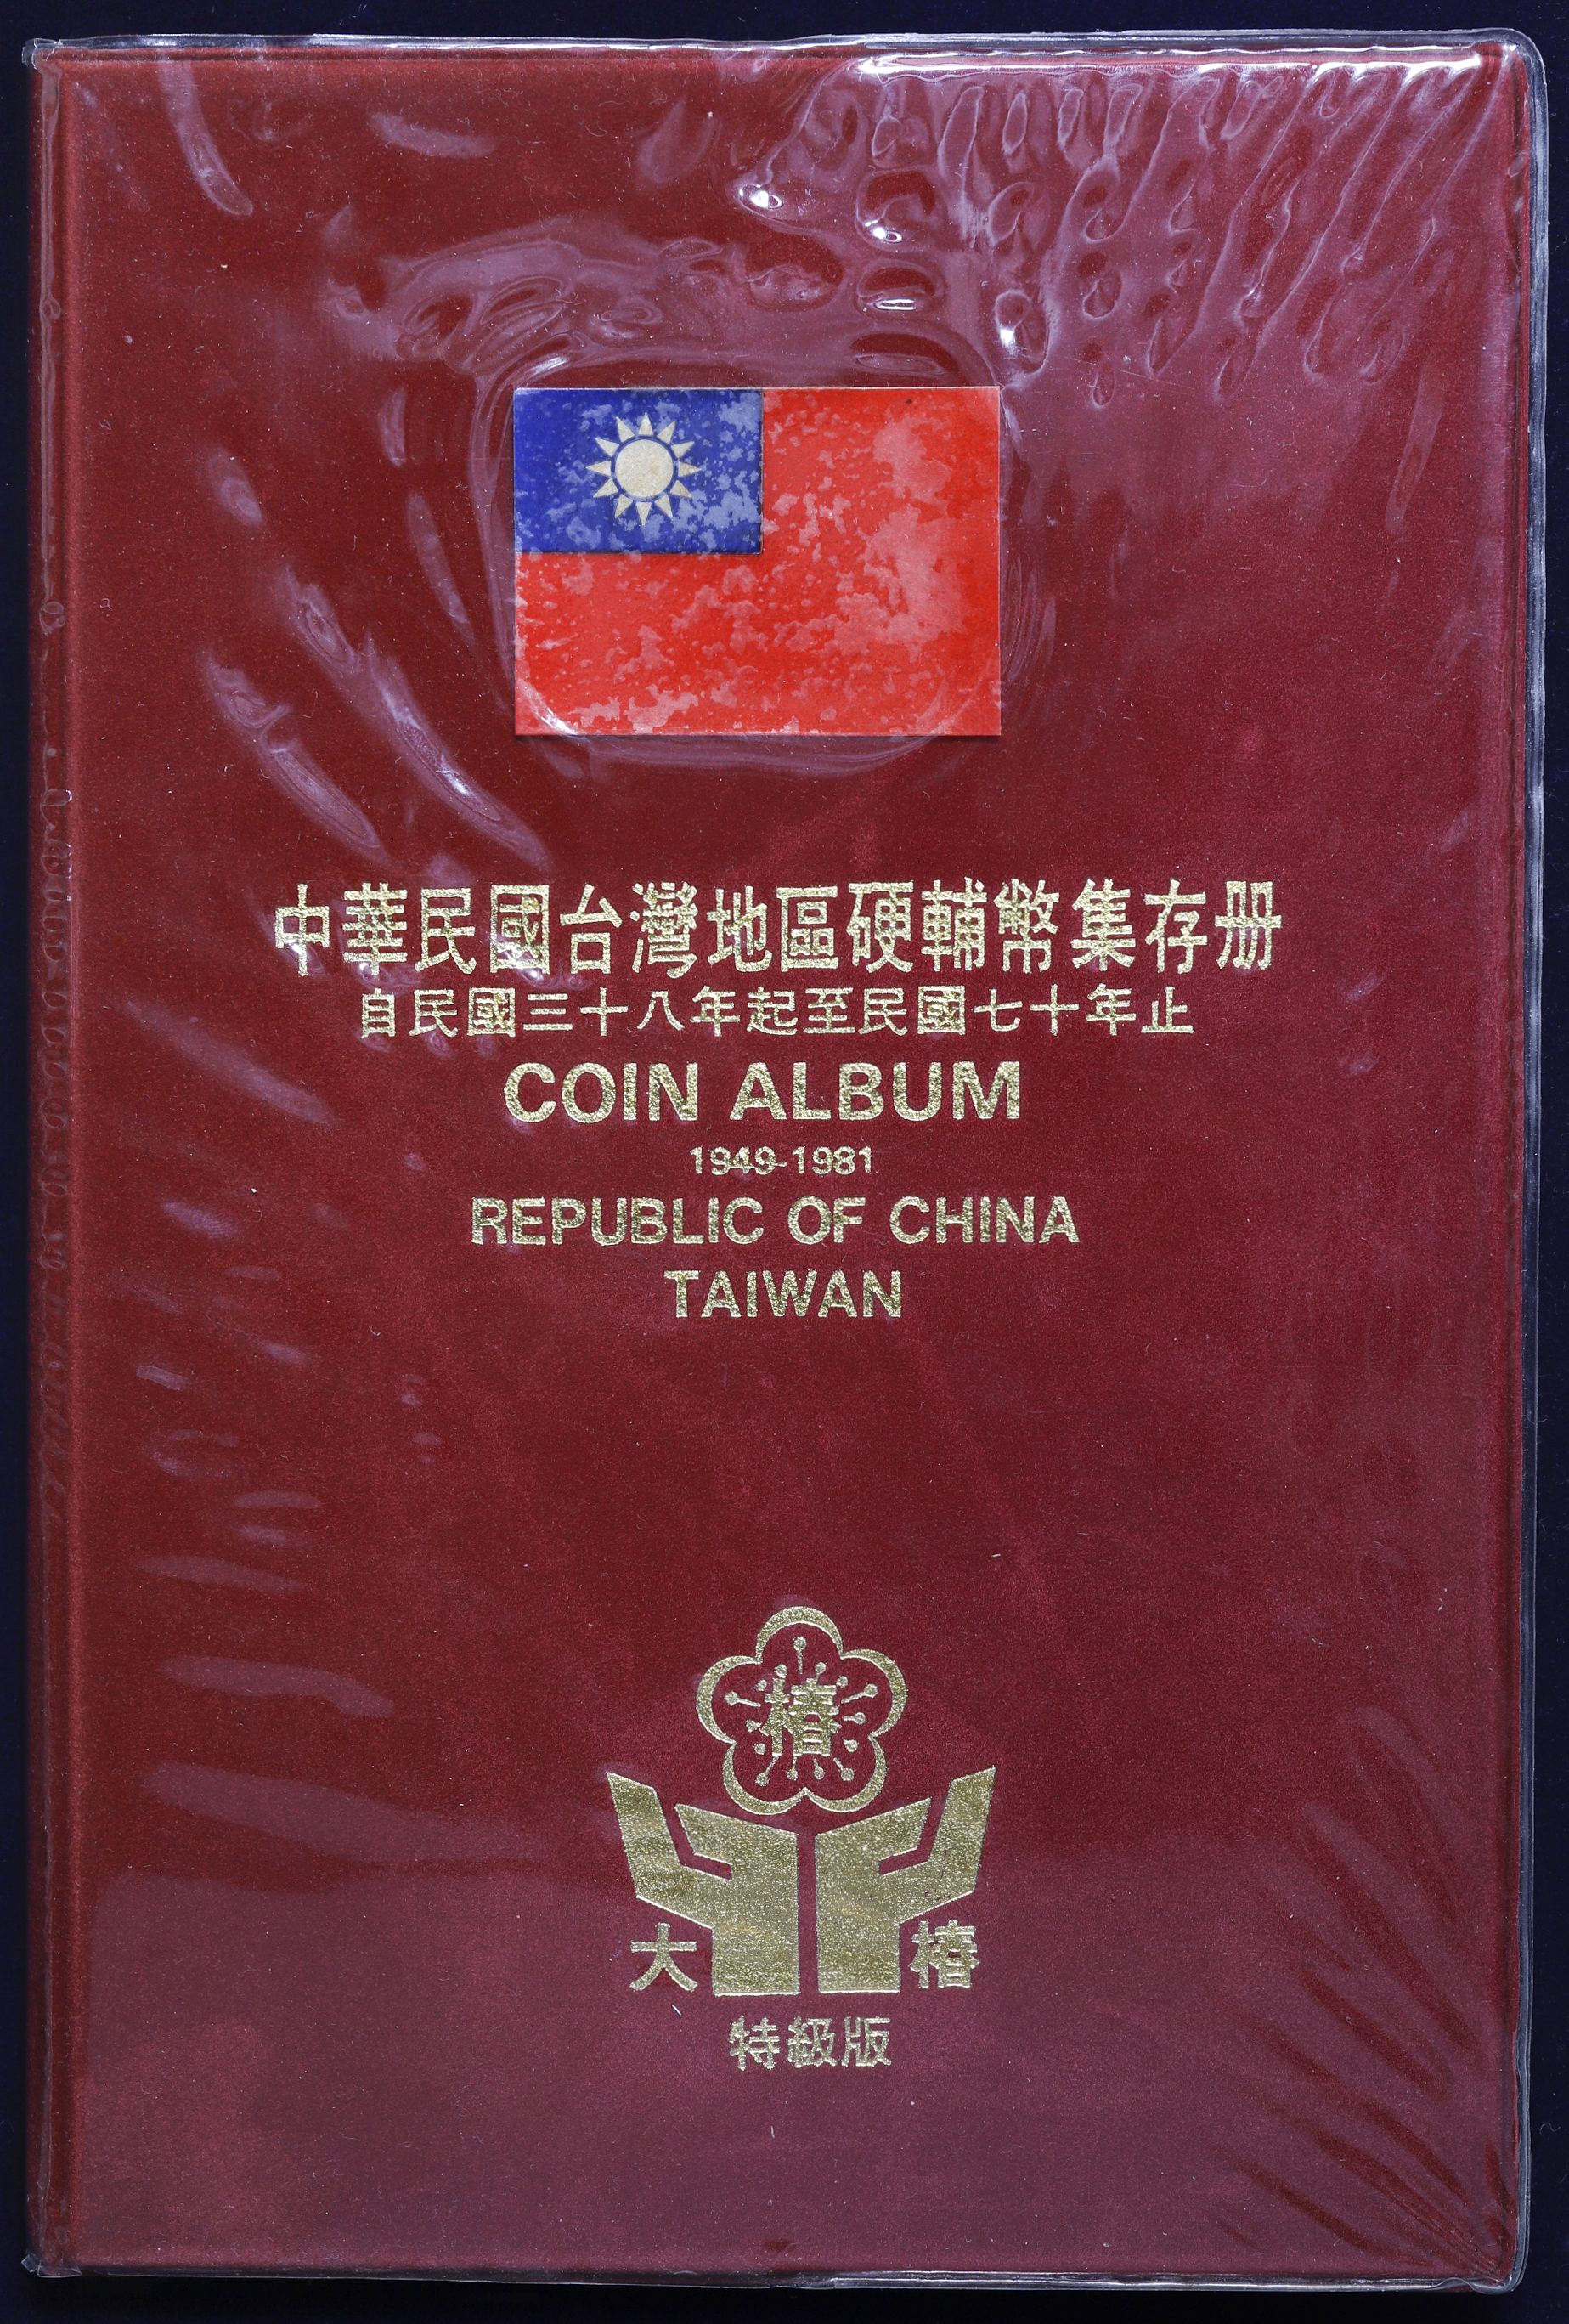 钱币博物馆| TAIWAN 台湾中華民国台湾地区硬輔幣集存冊（Coin Album 